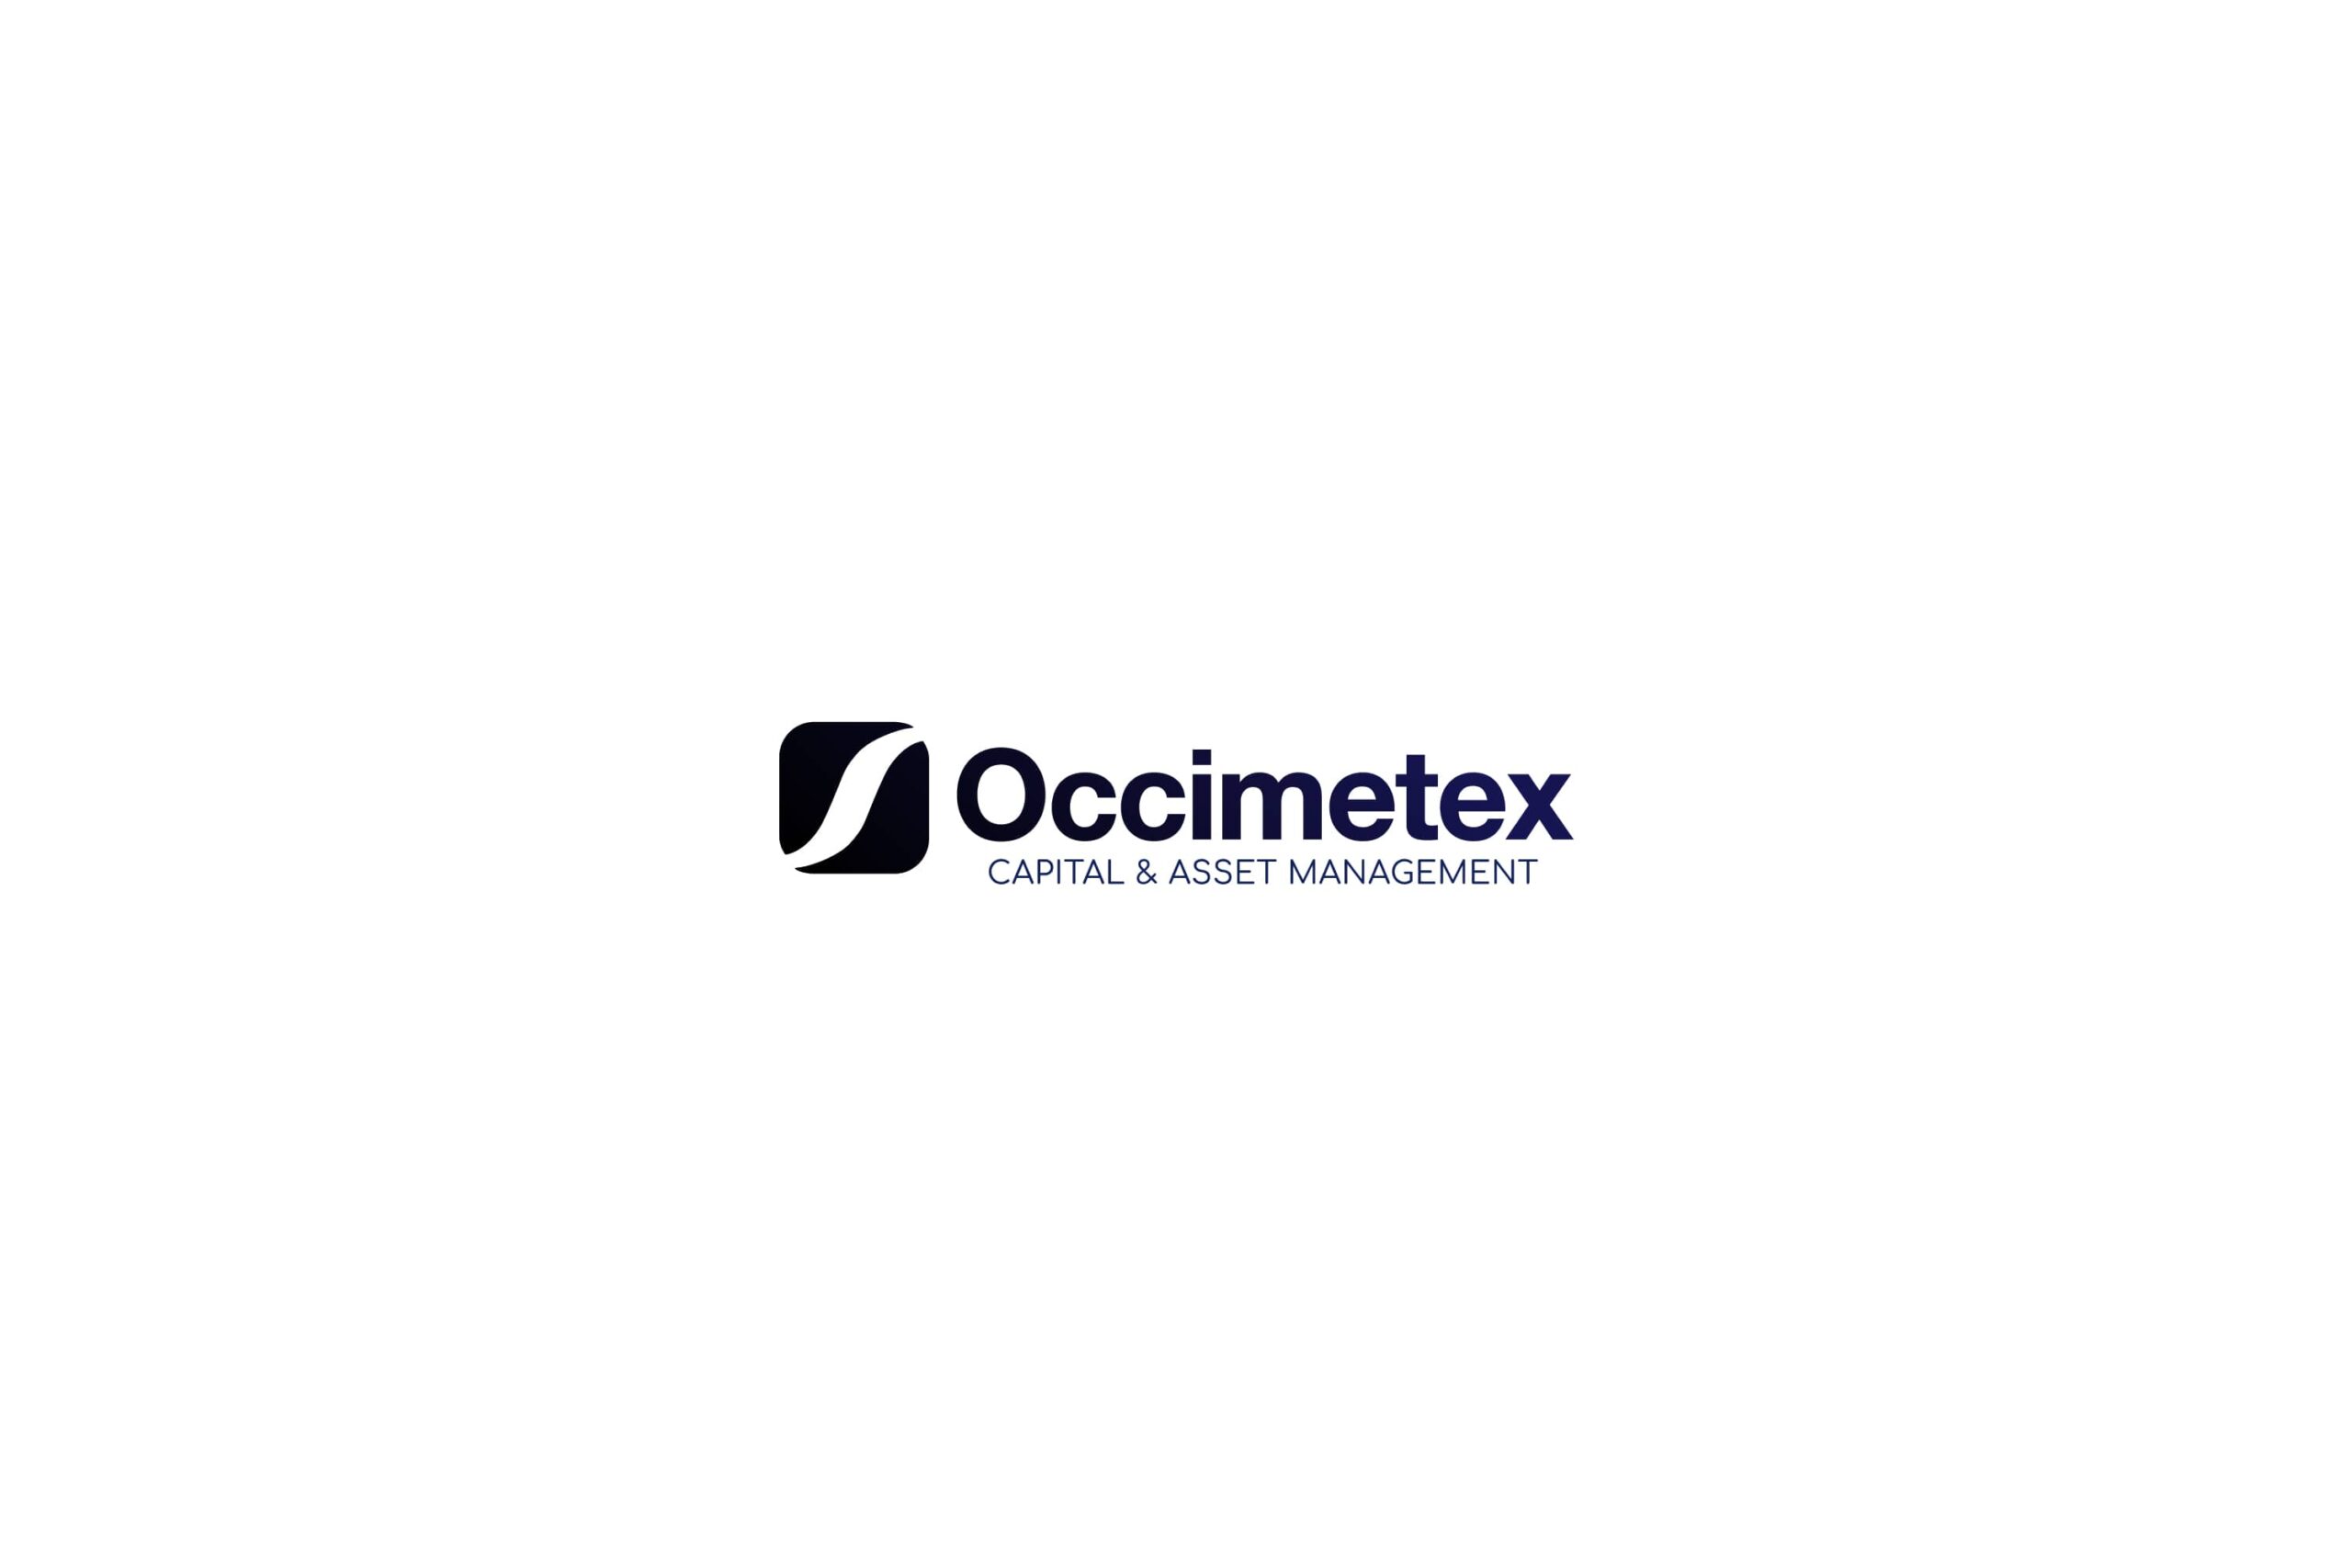 Logotipo azul sobre fondo blanco Occimetex branding por The Acctitude